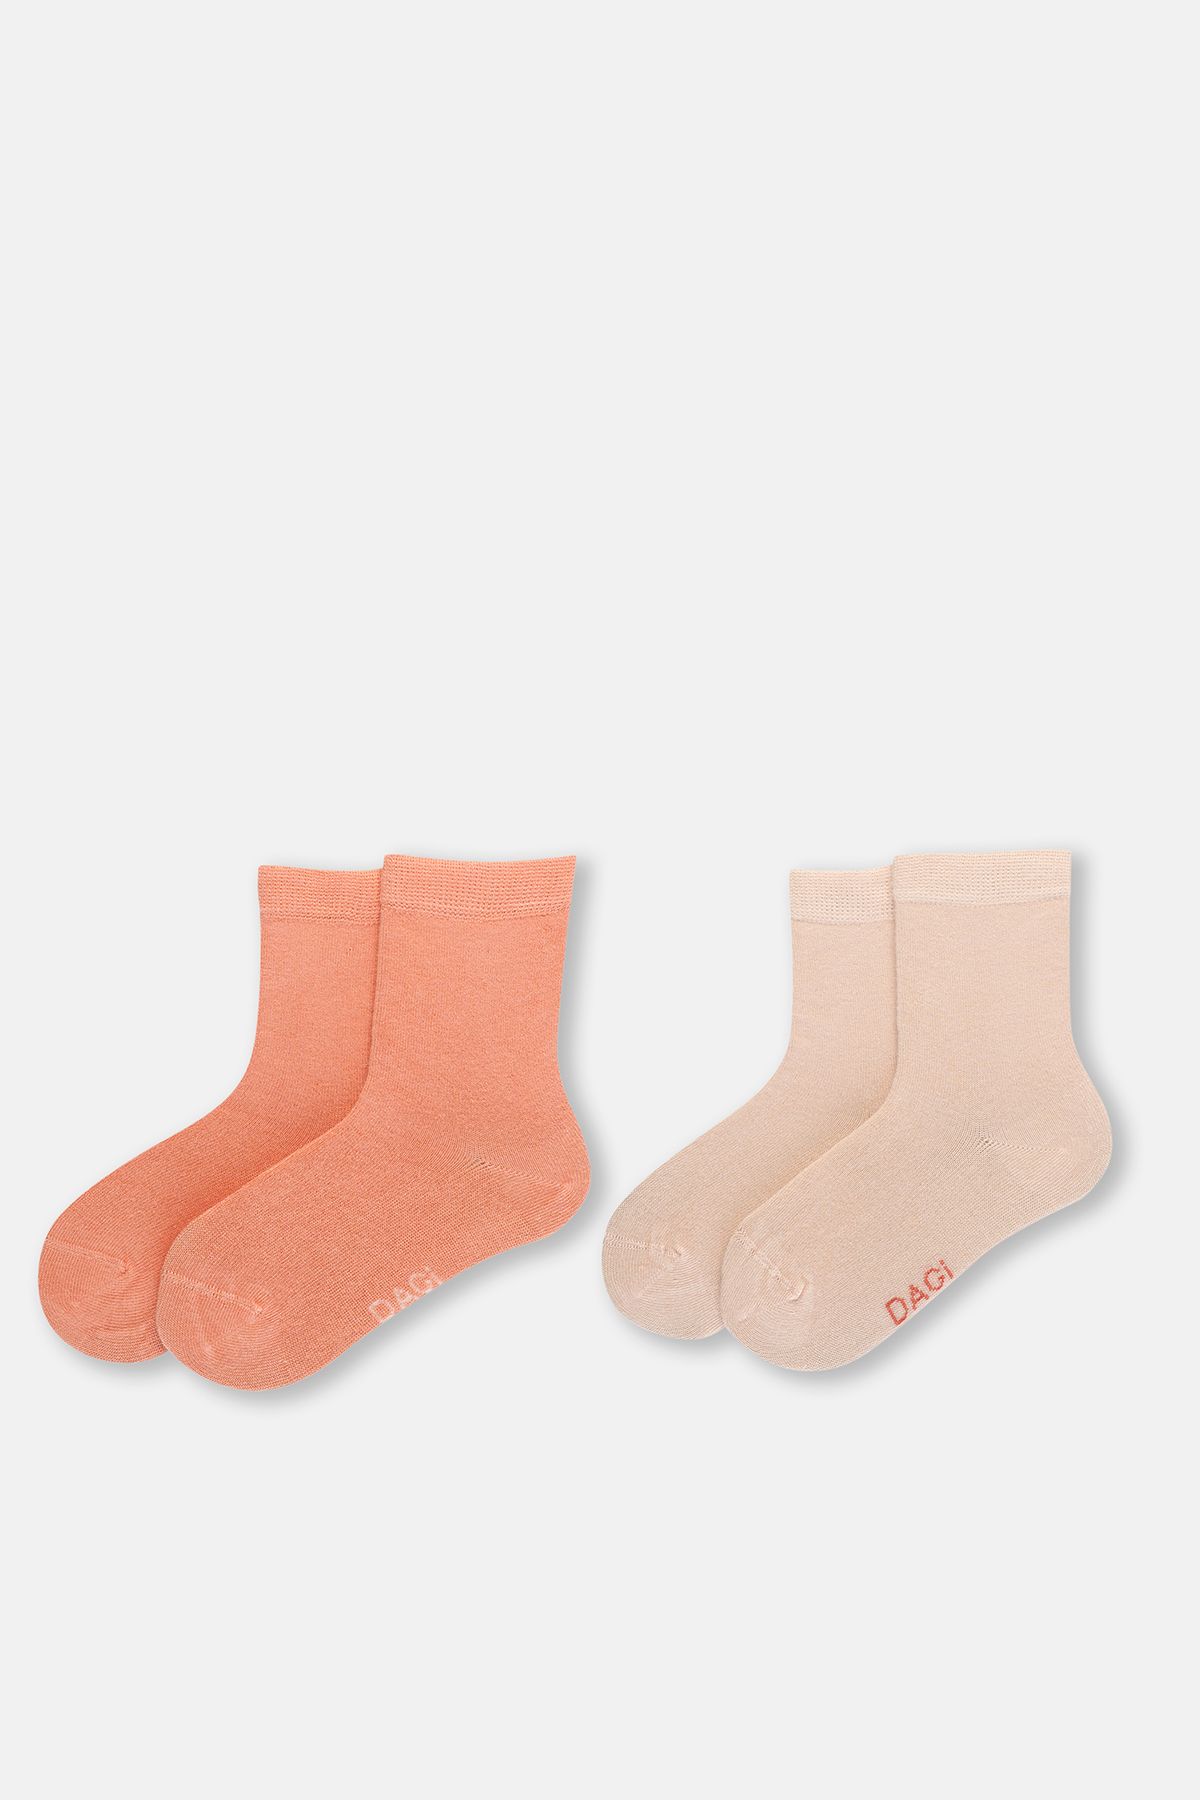 Dagi Yavru Ağzı Kız Çocuk Modal Çorap 2'Li